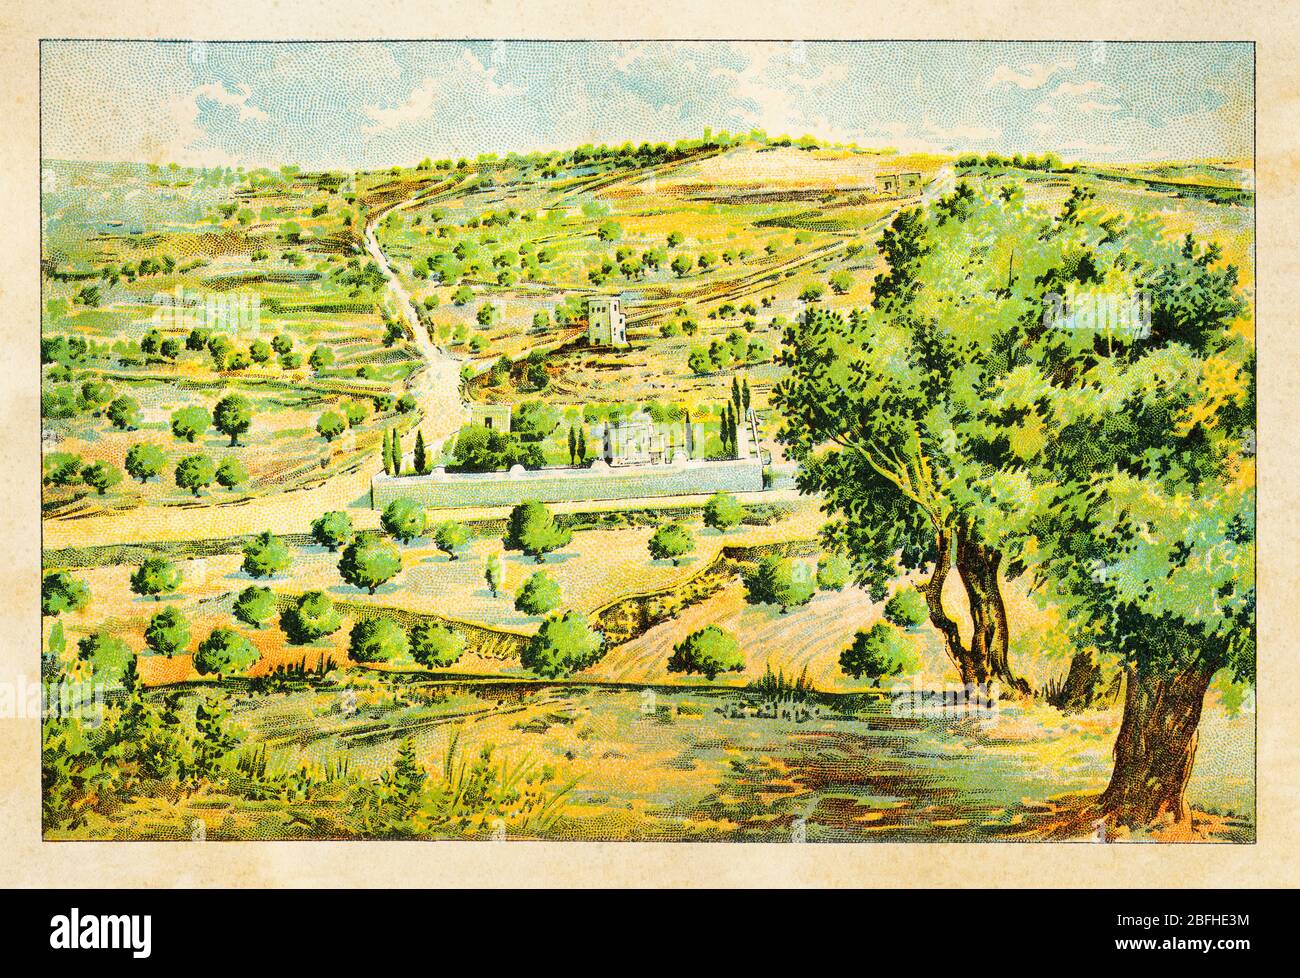 Monte degli Ulivi (Jebel et-Tur) Vista generale del Giardino di Getsemani, Gerusalemme. Israele, cromolitografia a colori la Terra Santa 1898 Foto Stock